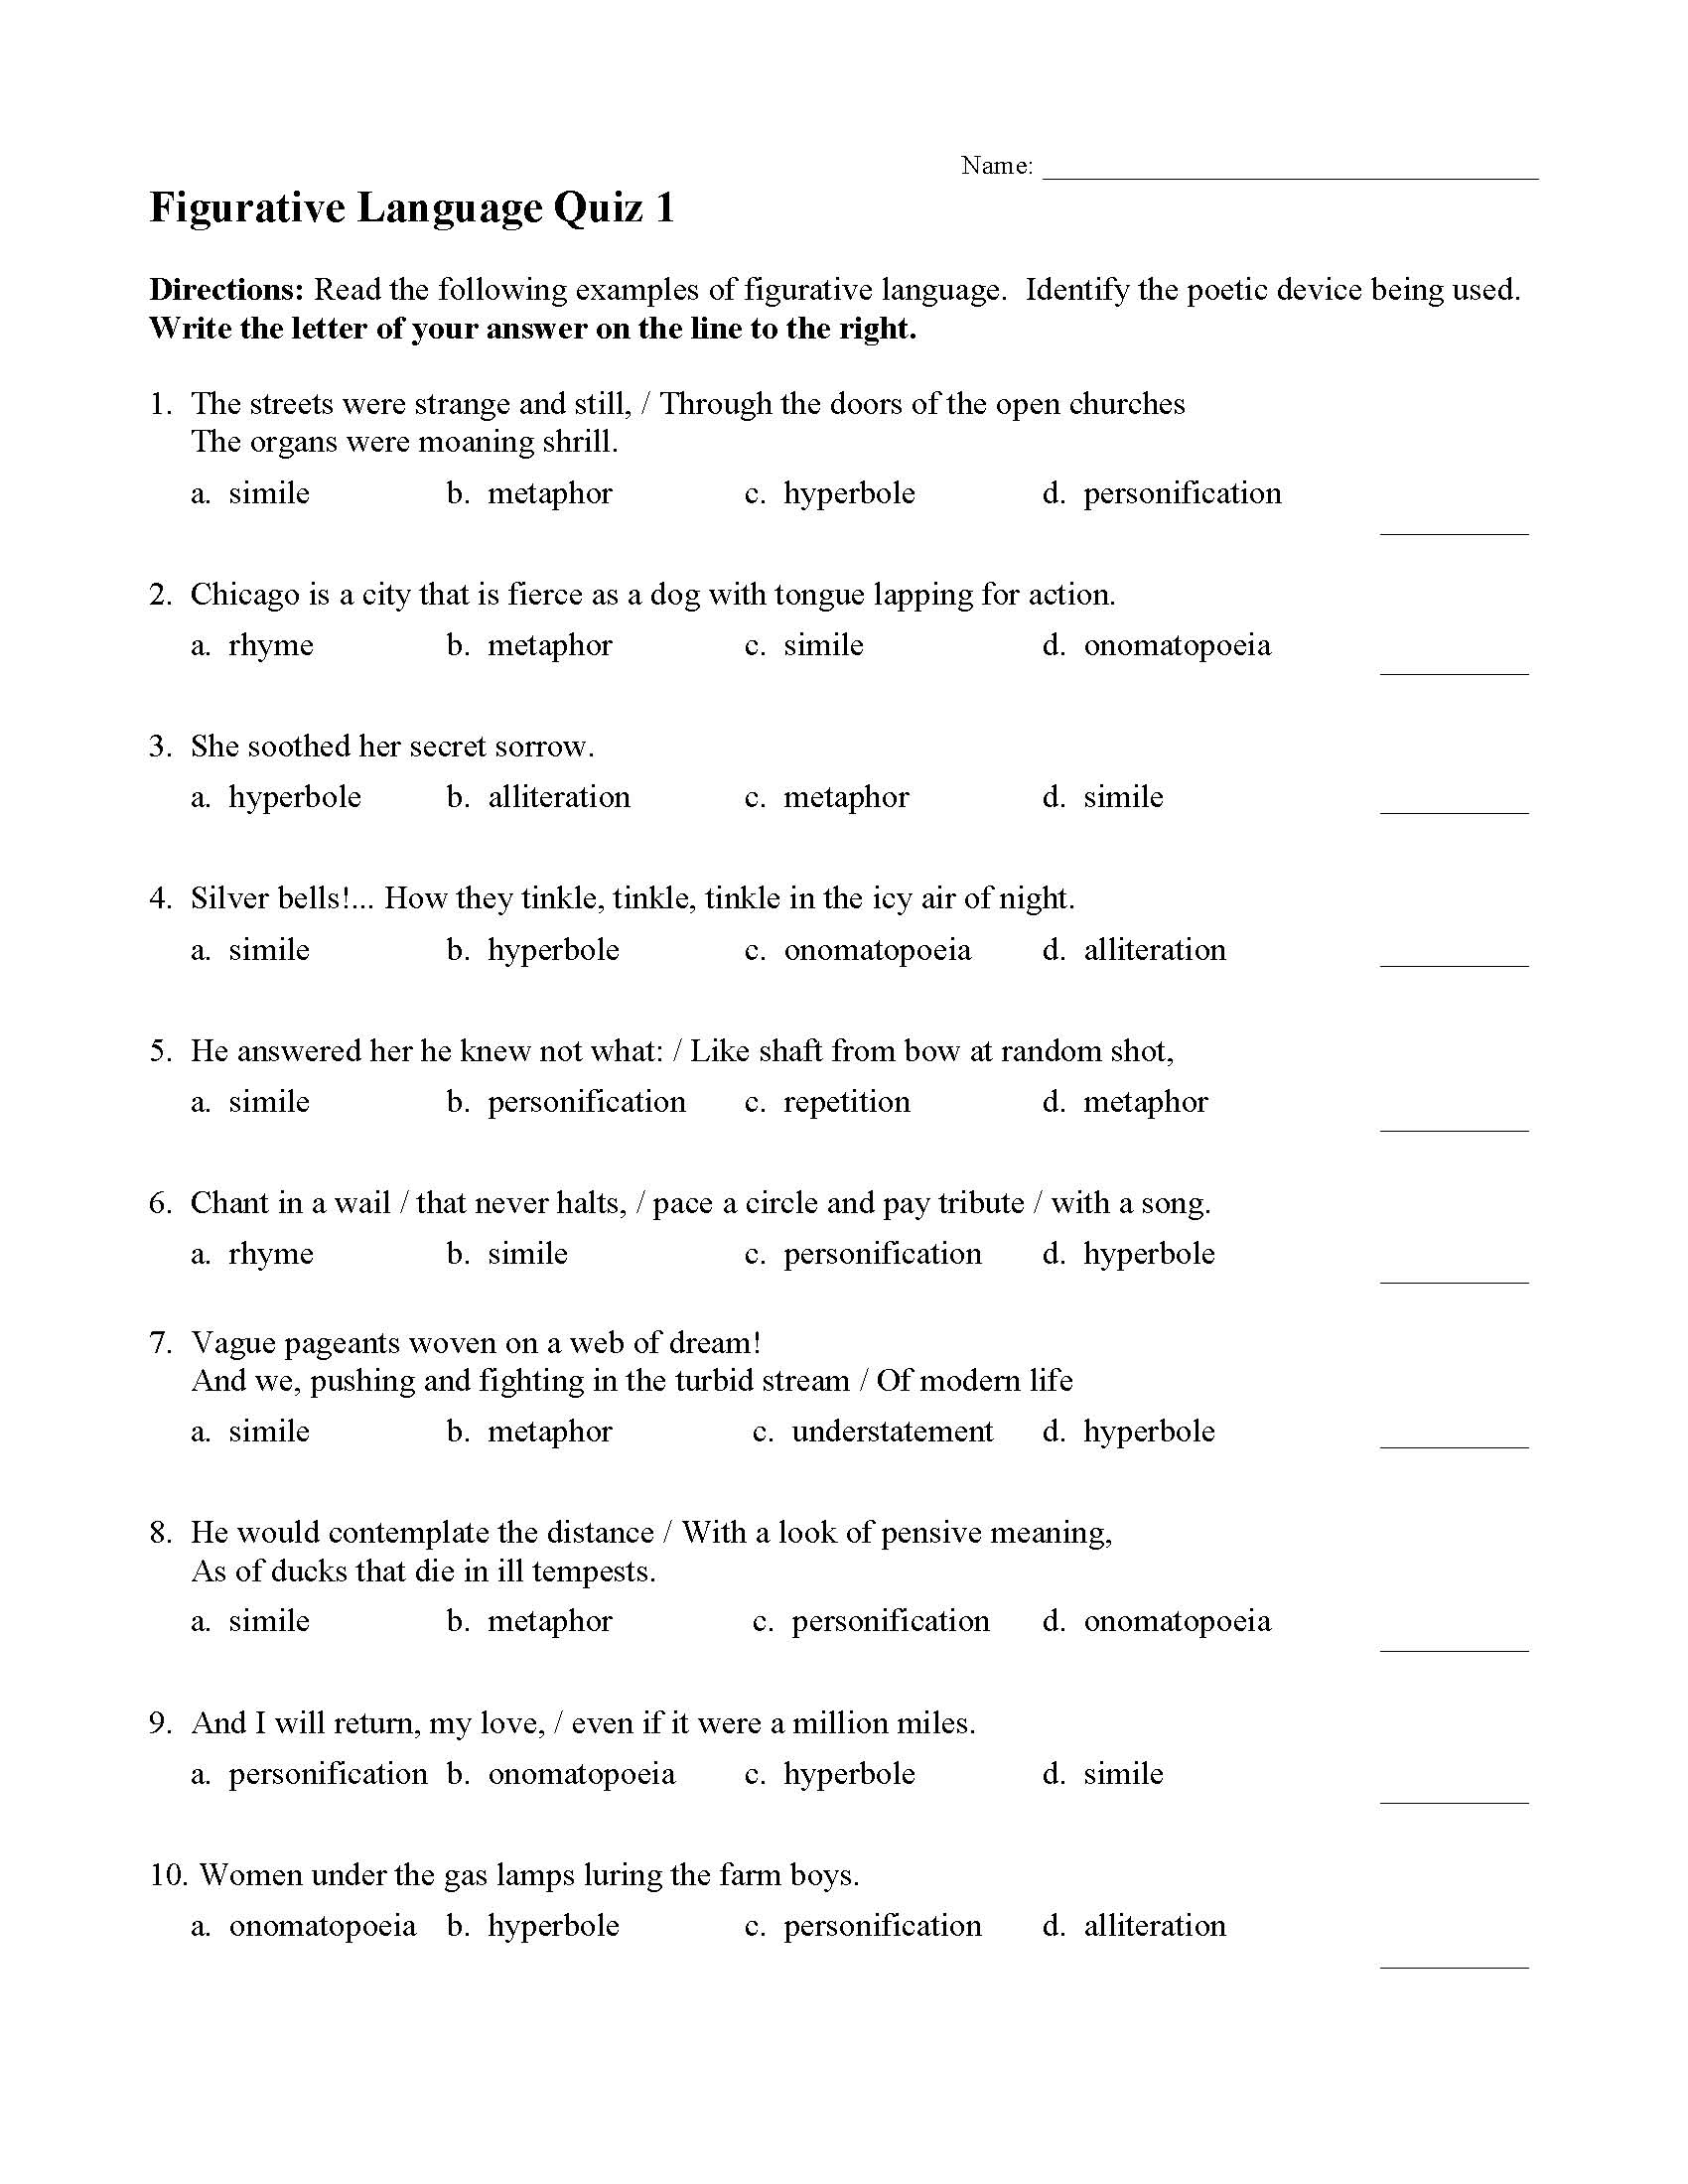 figurative-language-quiz-figurative-language-worksheet-language-my